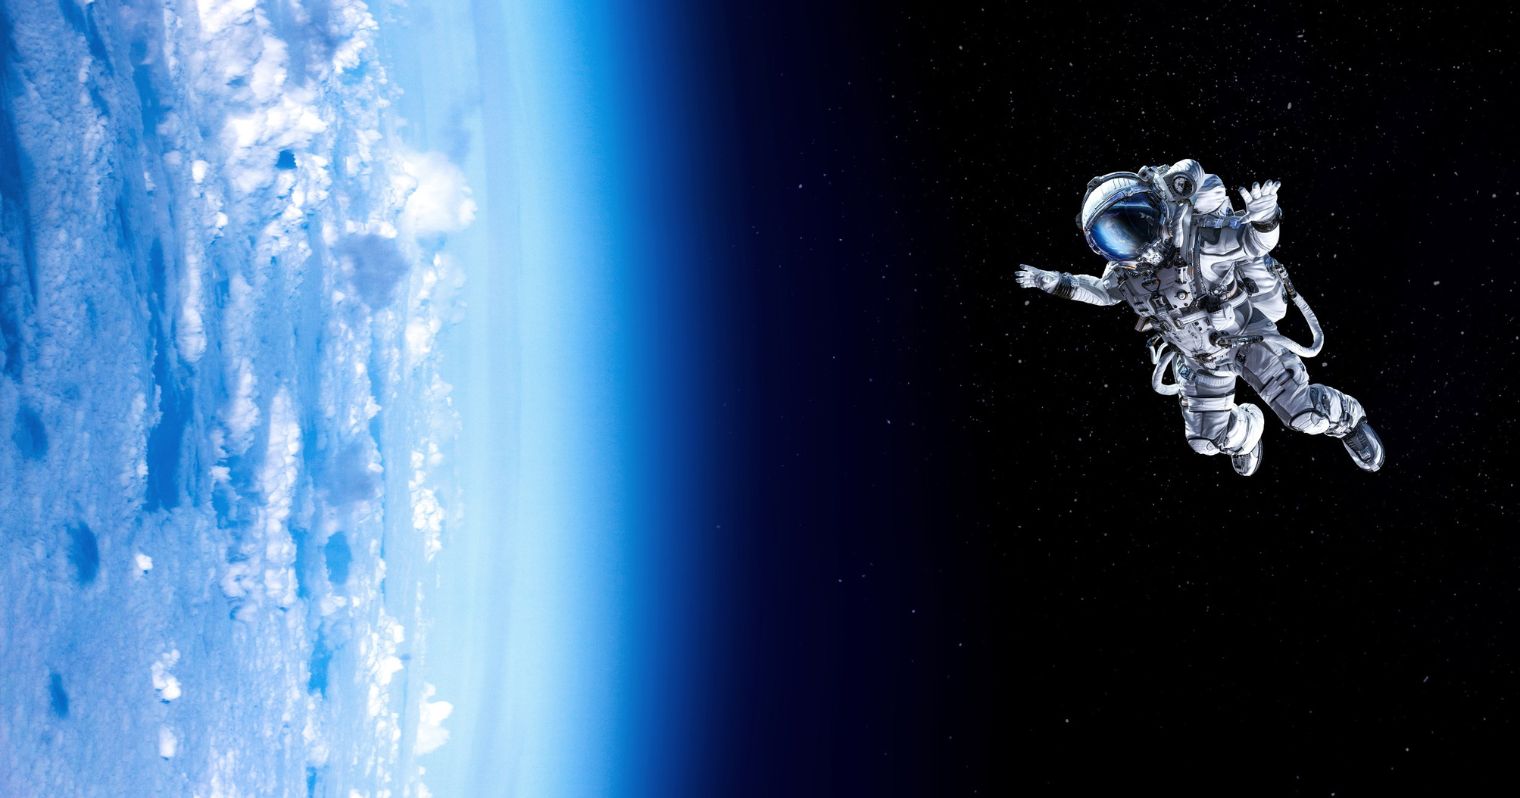 A képen egy asztronauta lebeg az űrben, a kép bal oldalán a Föld és a légkör egy része látható